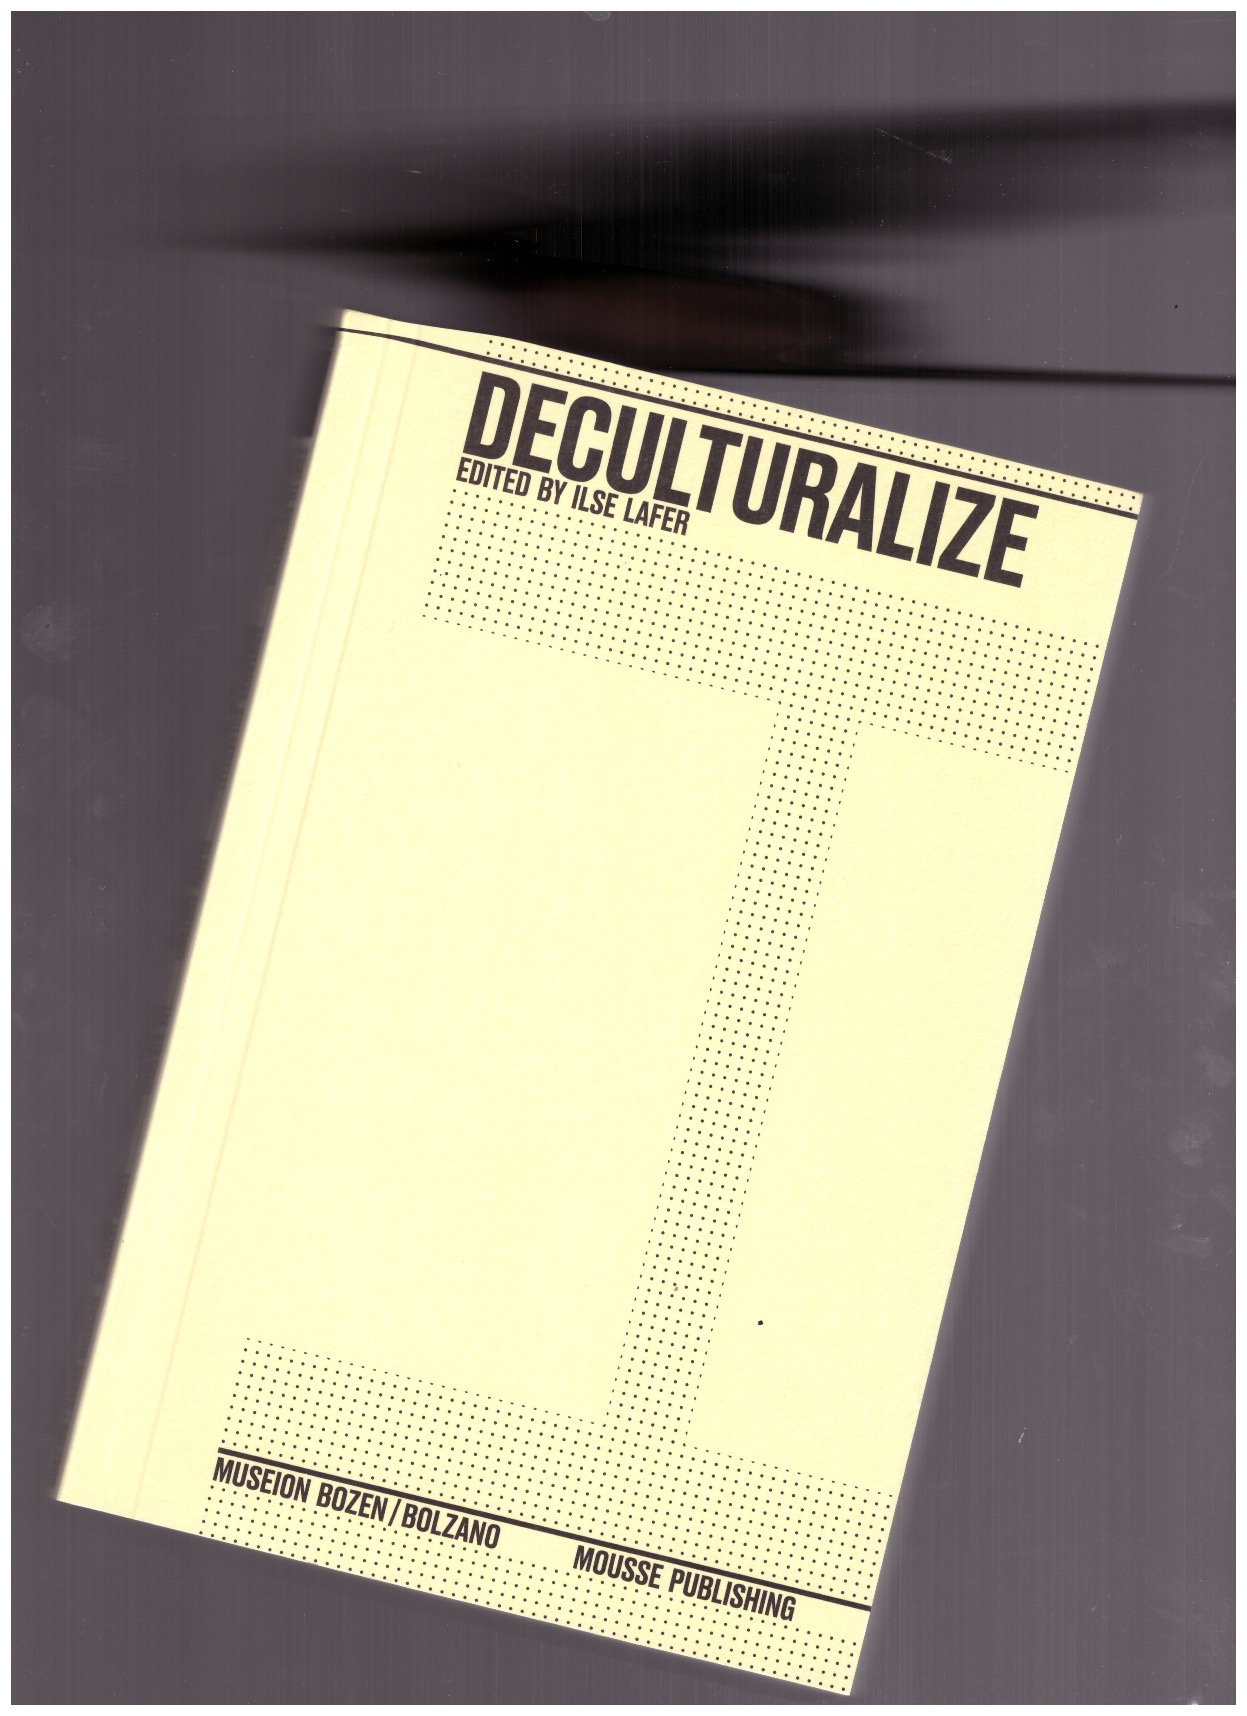 LAFE, Ilser (ed.) - Deculturalize